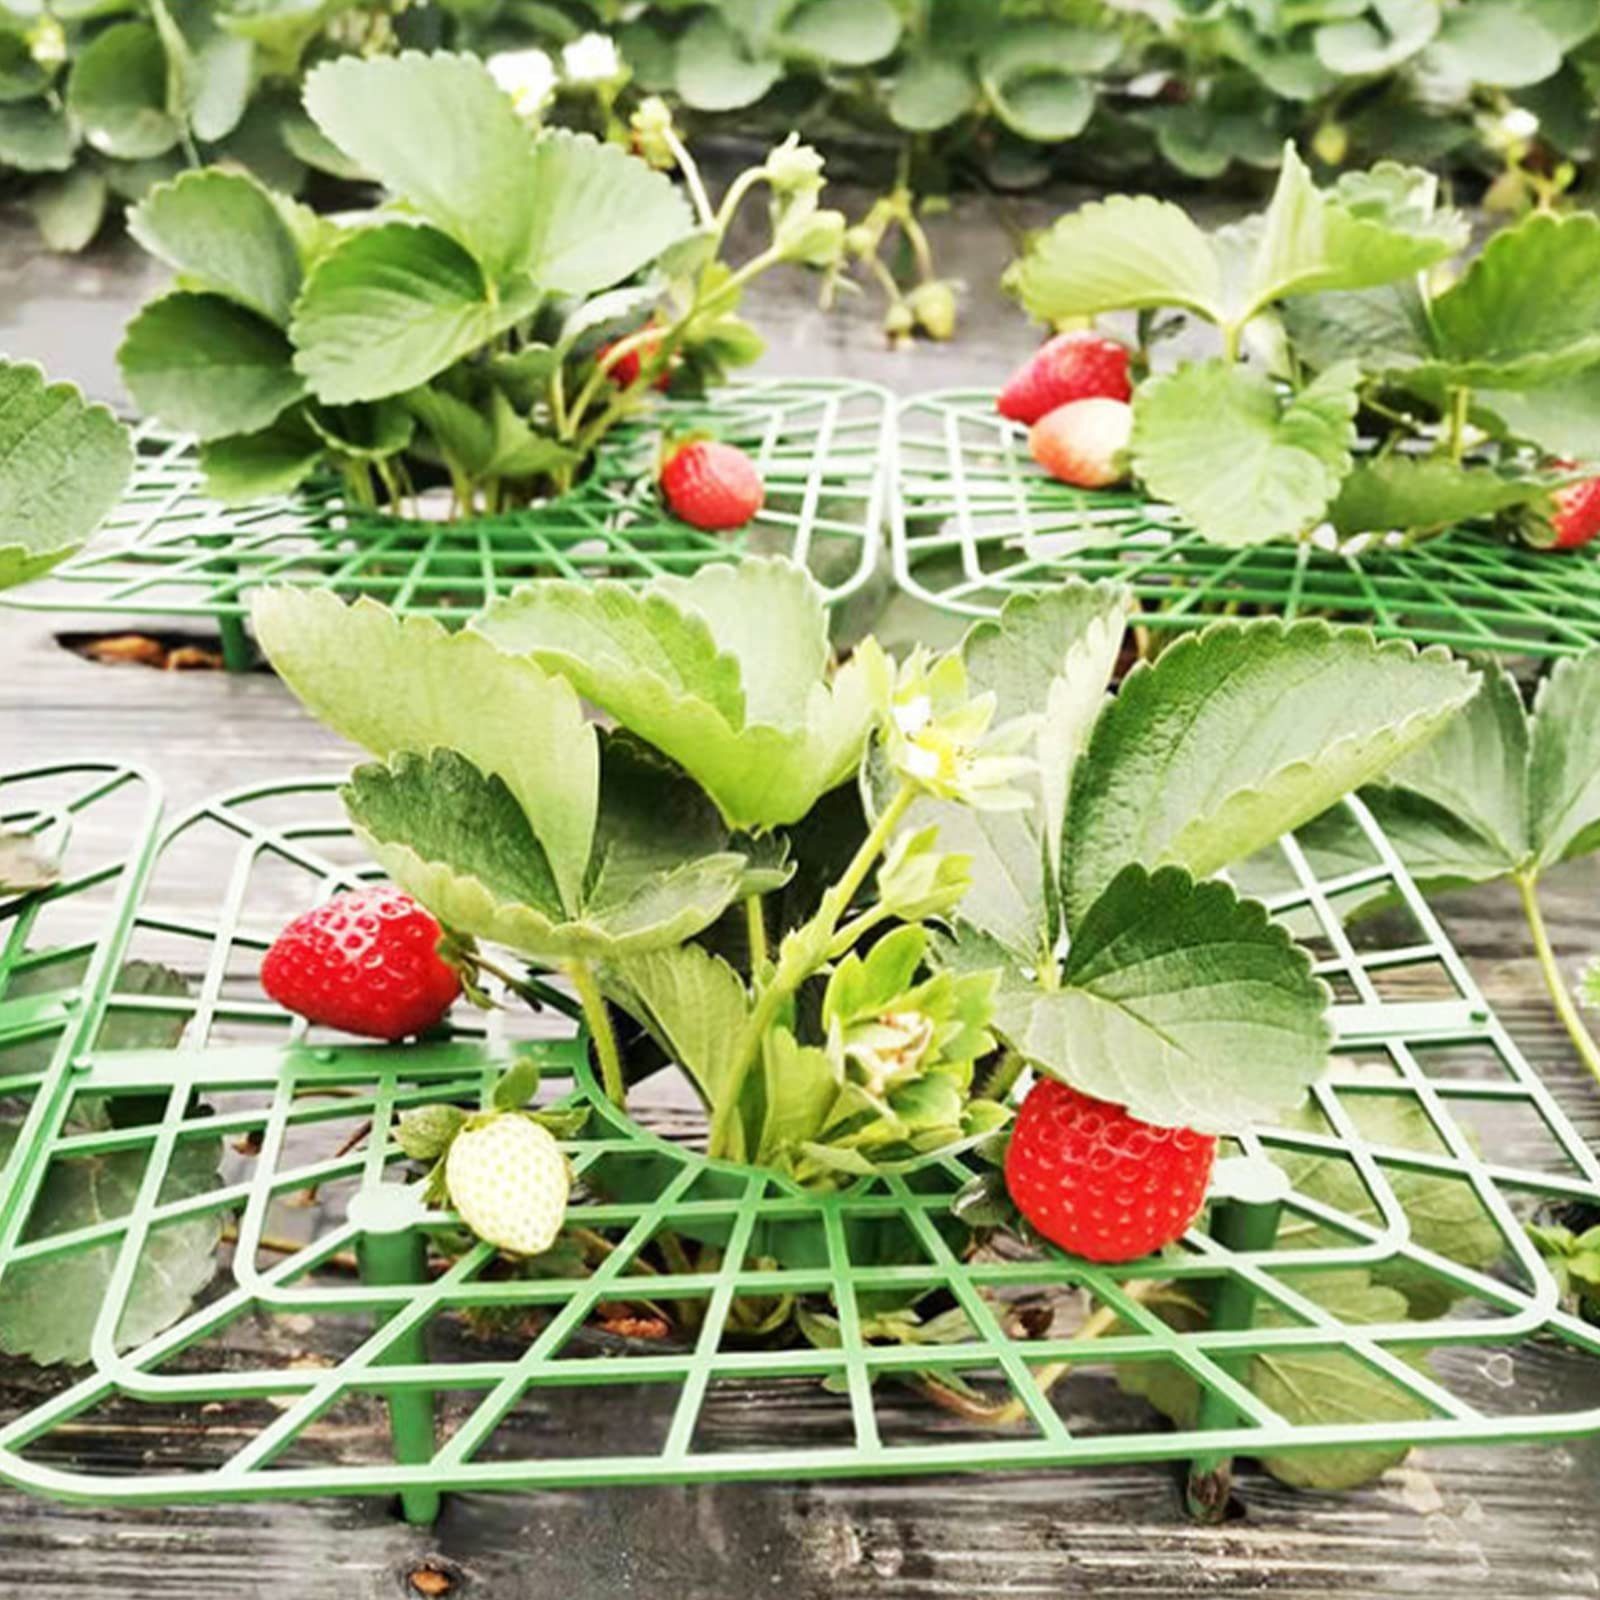 Erdbeeren von Erdbeerstützen Beinen,Erdbeer-Pflanzenständer, Blumenständer 8x mit Pflanzenregal,Balkon-Gemüseregal,Erhöhung für 4 Obst/Gemüse,Kunststoff SEEZSSA